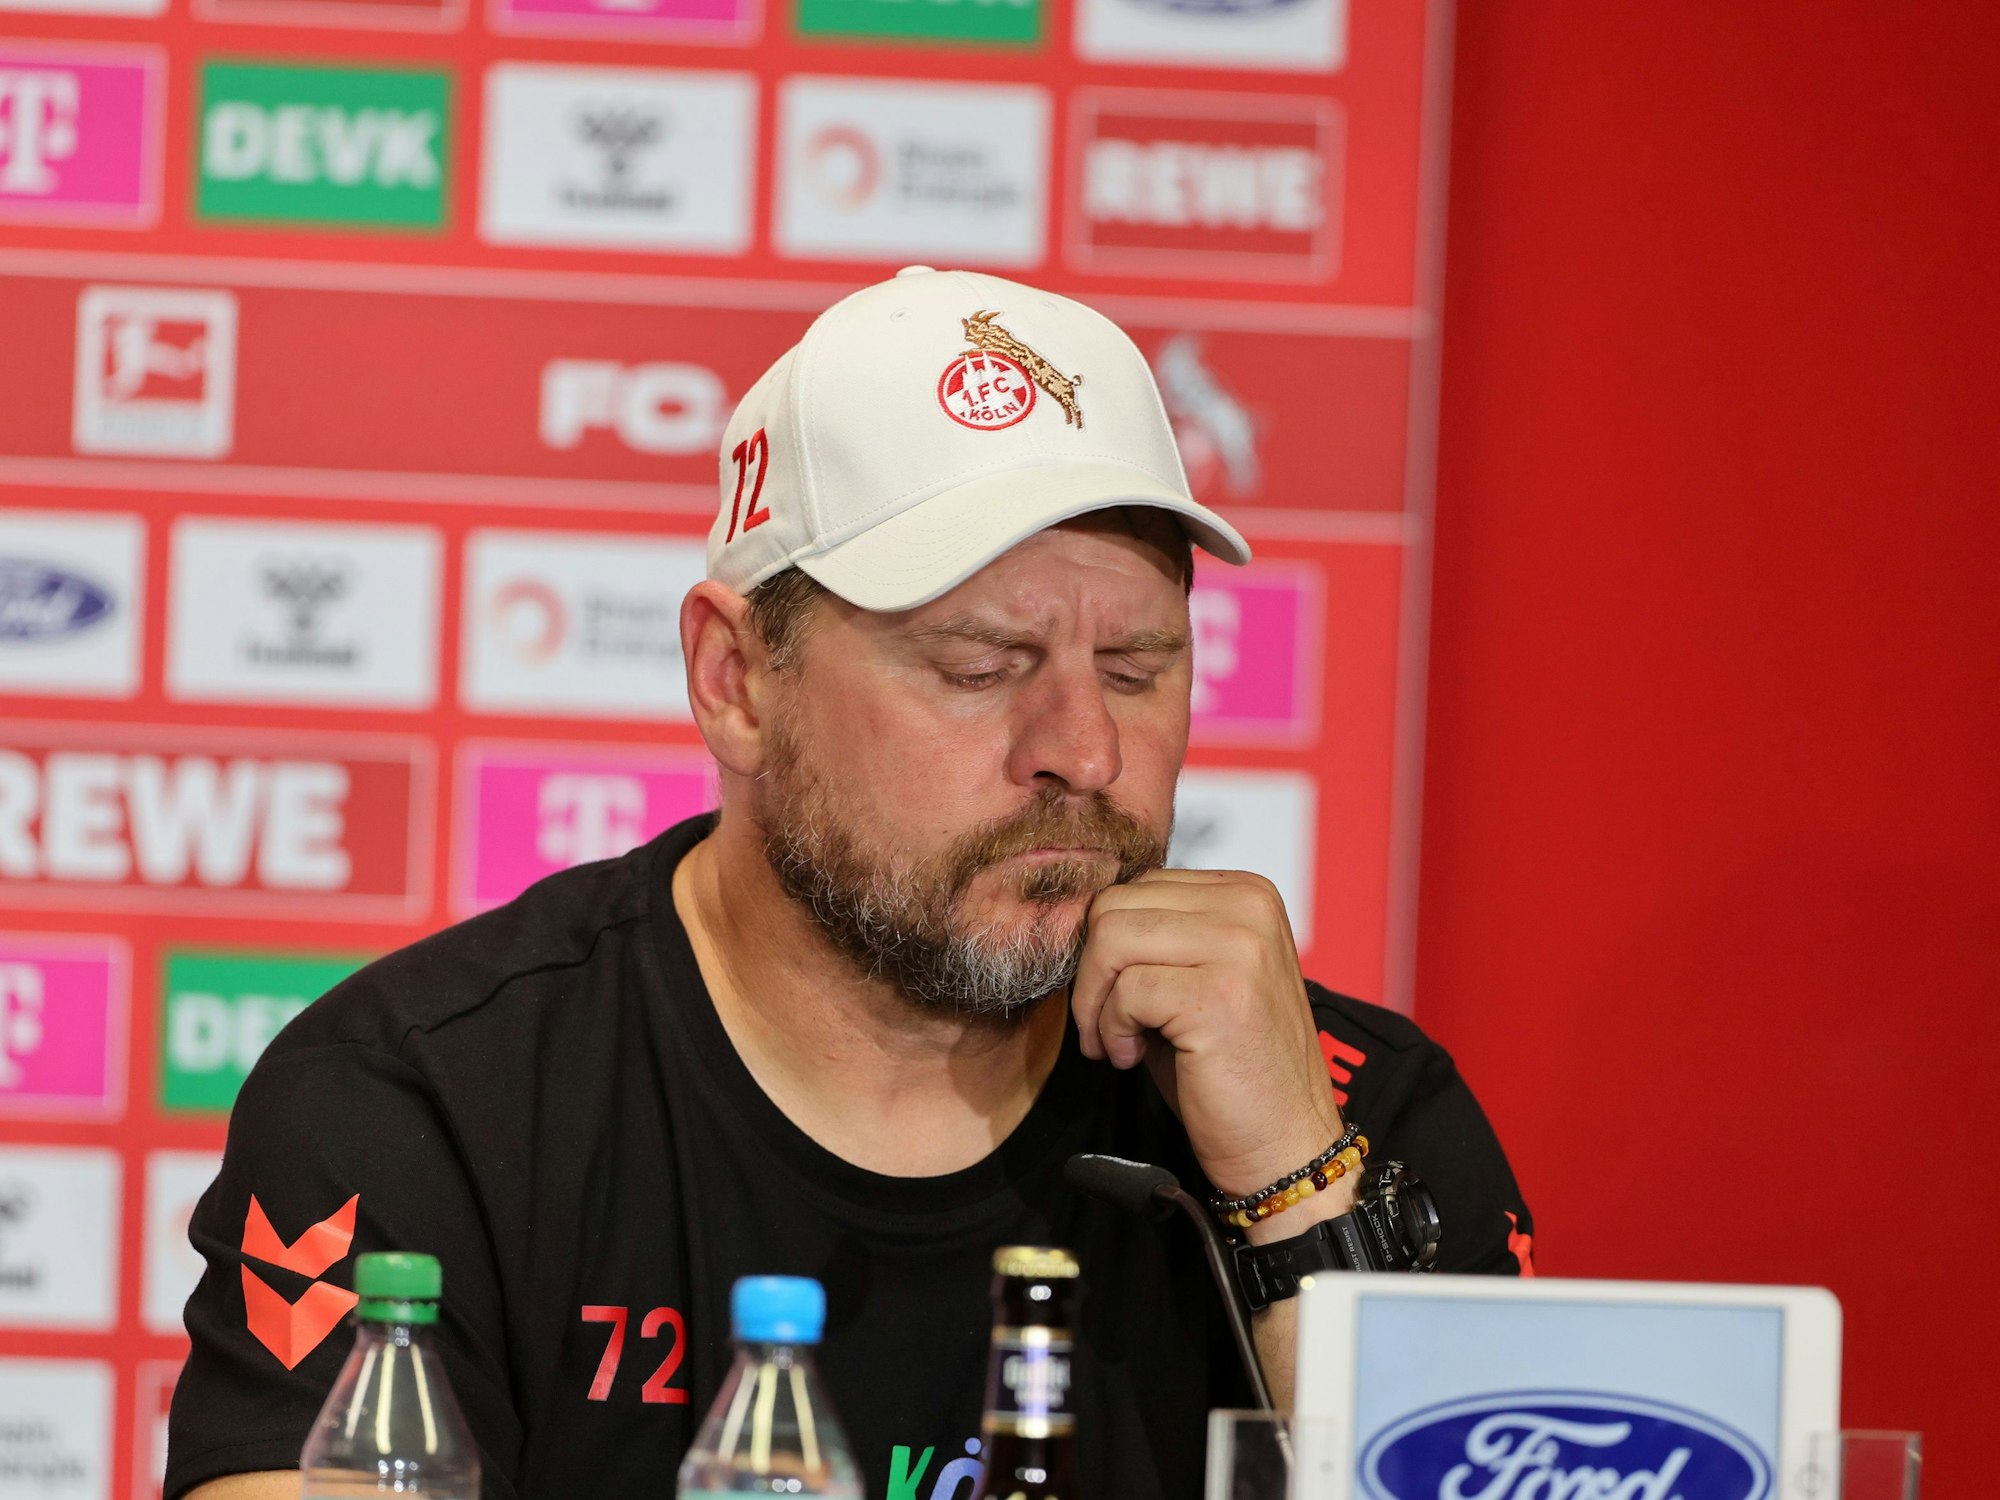 Pressekonferenz mit Steffen Baumgart (1. FC Köln).








